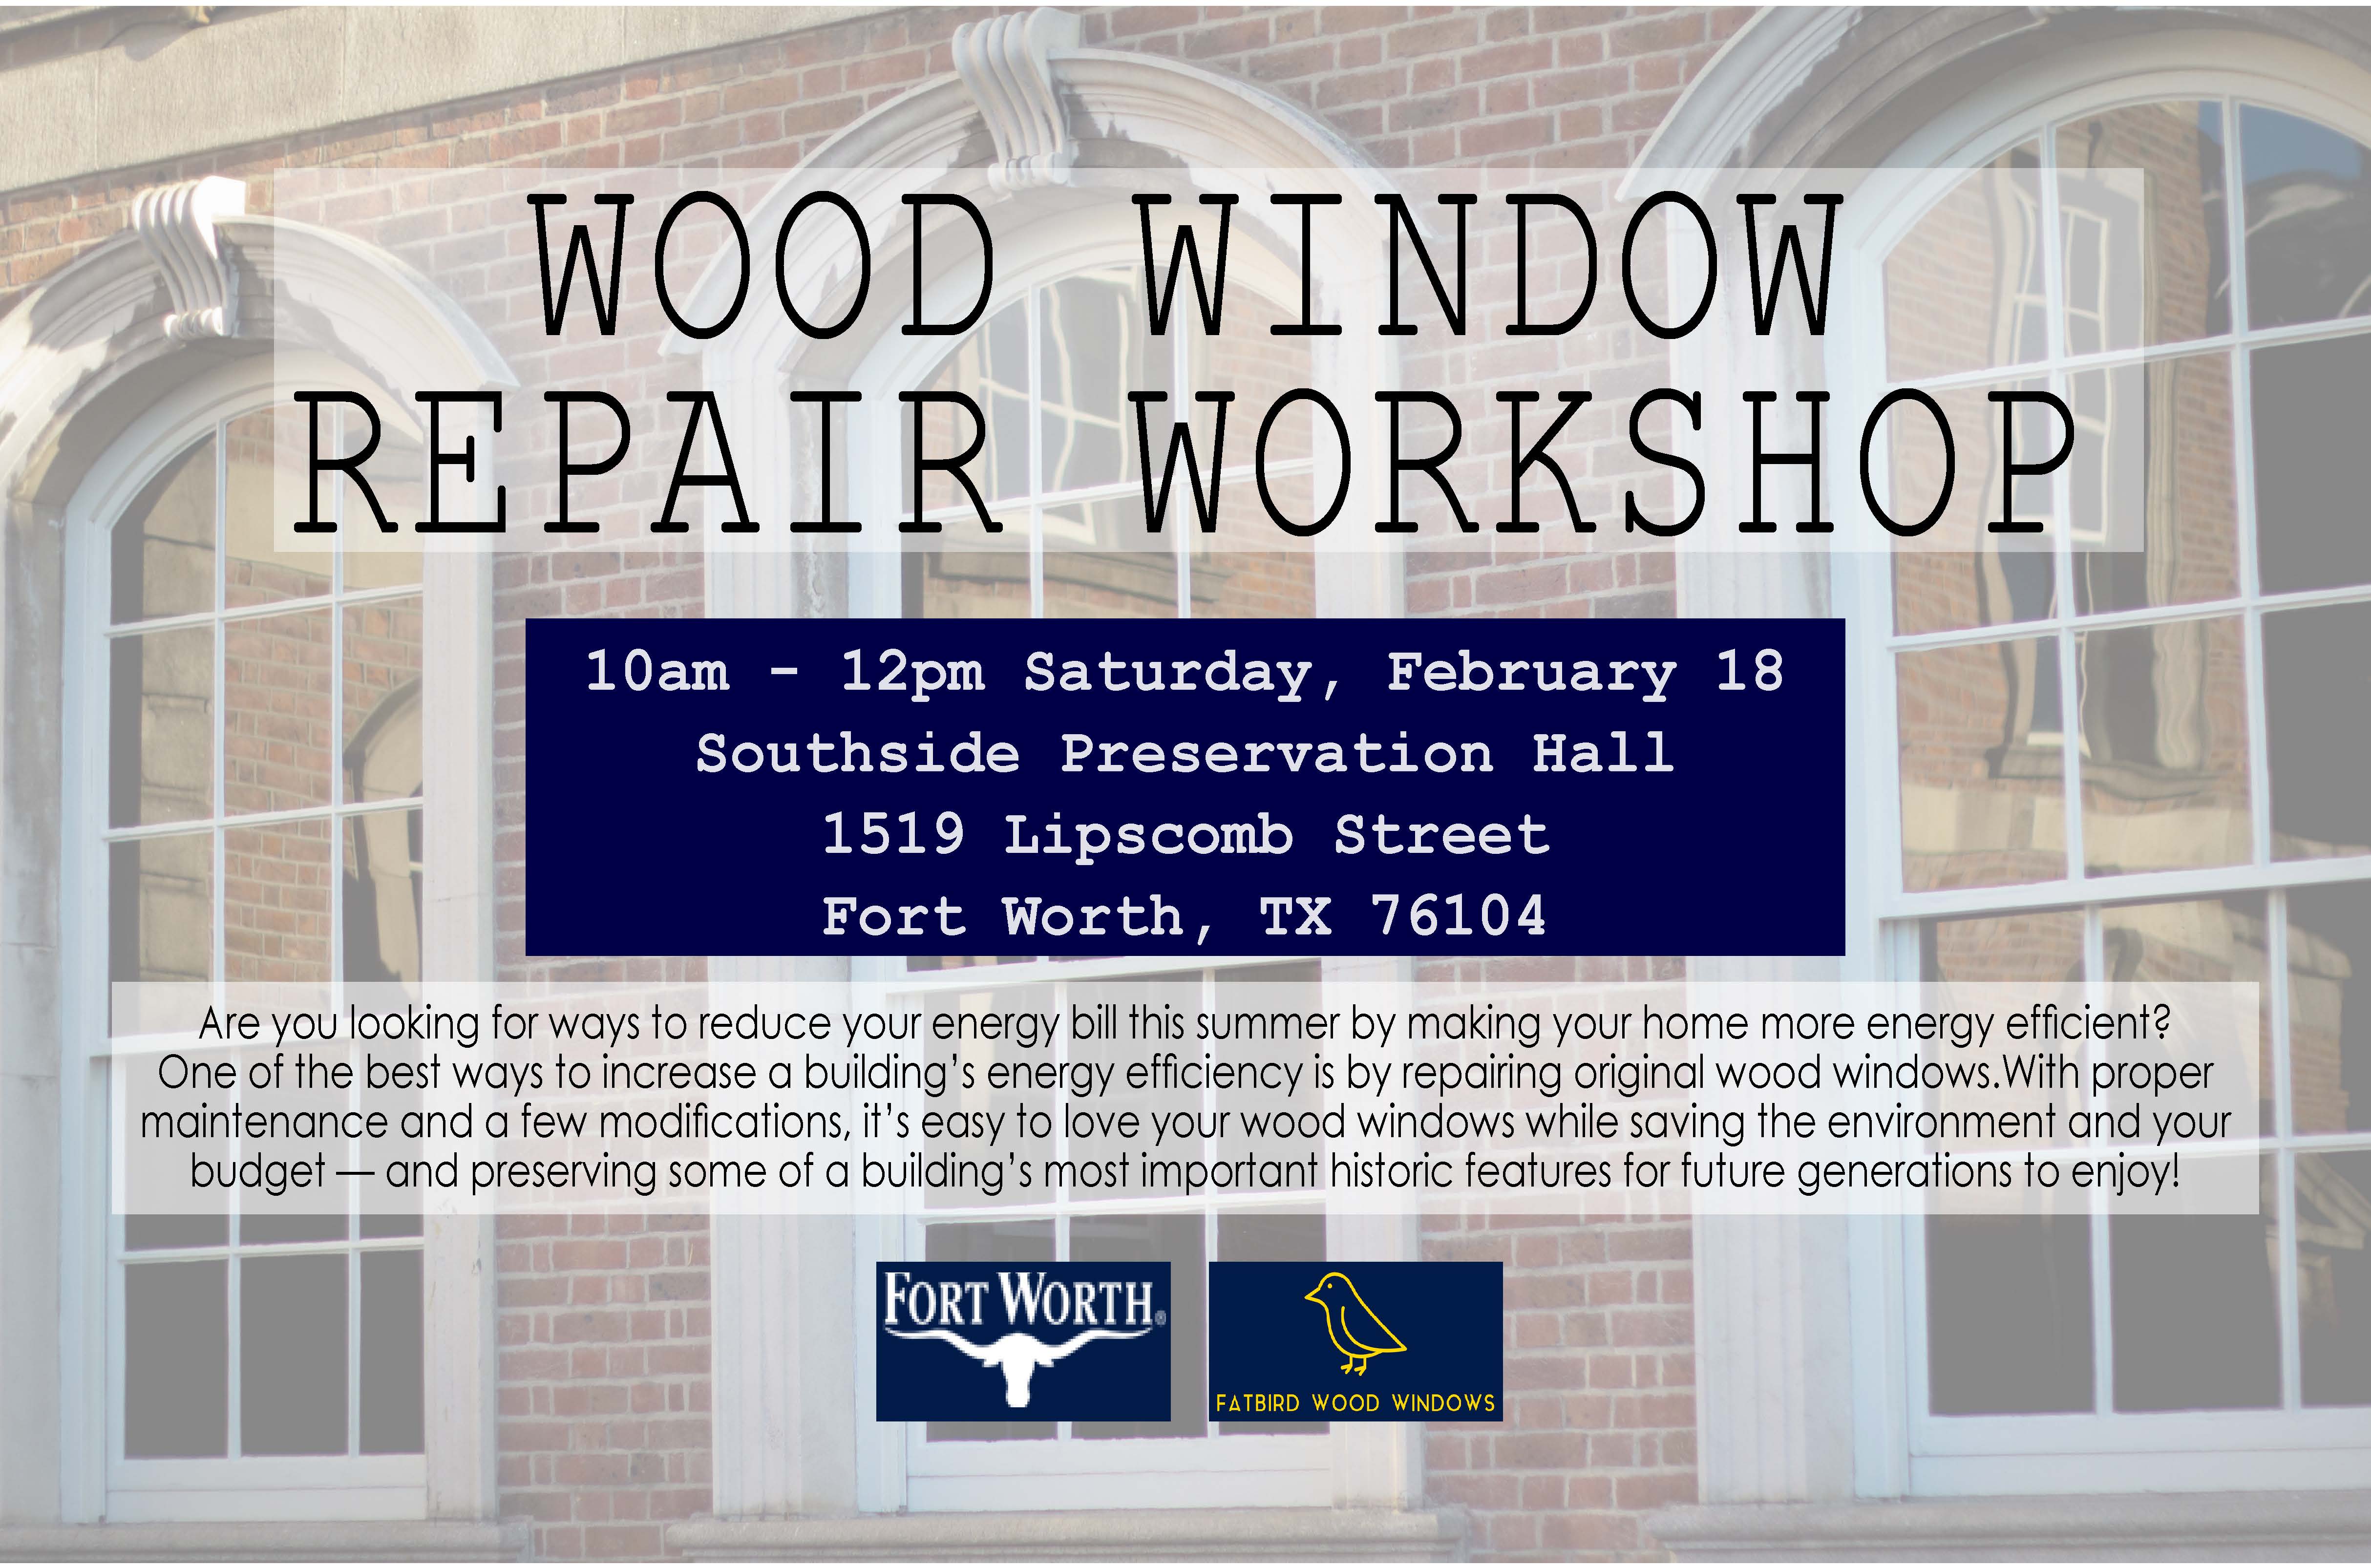 Wood-Windows-Workshop.jpg